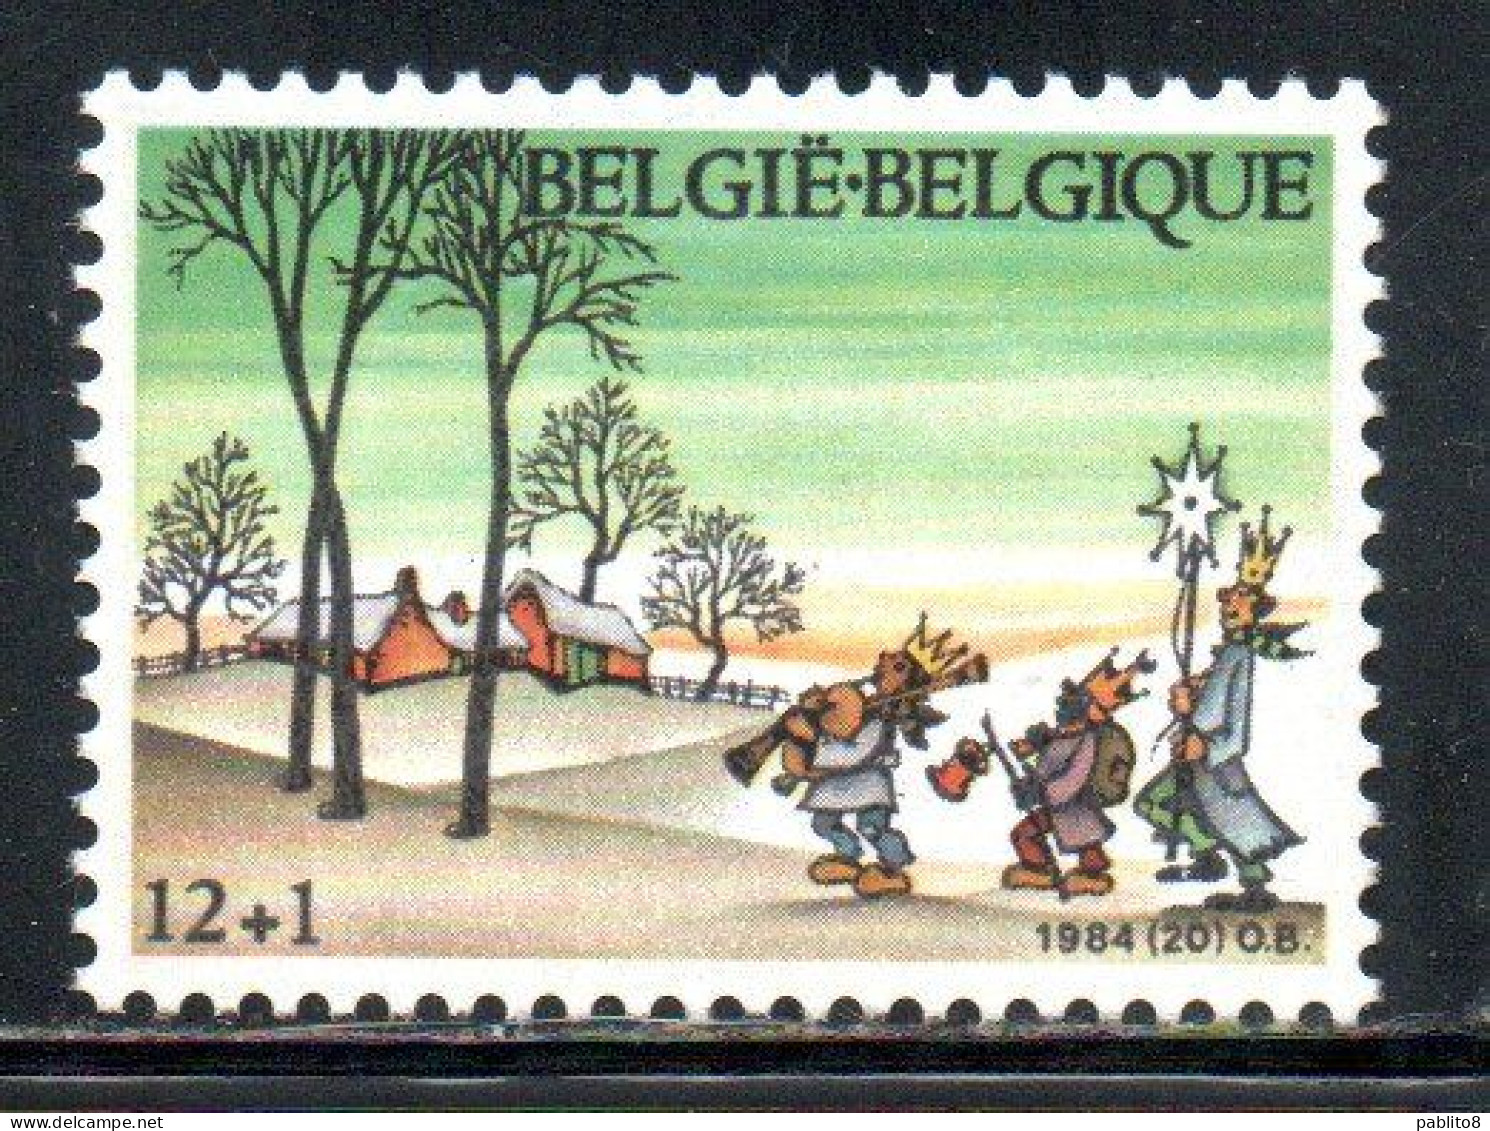 BELGIQUE BELGIE BELGIO BELGIUM 1984 CHRISTMAS NOEL NATALE WEIHNACHTEN NAVIDAD 12 + 1fr MNH - Nuevos